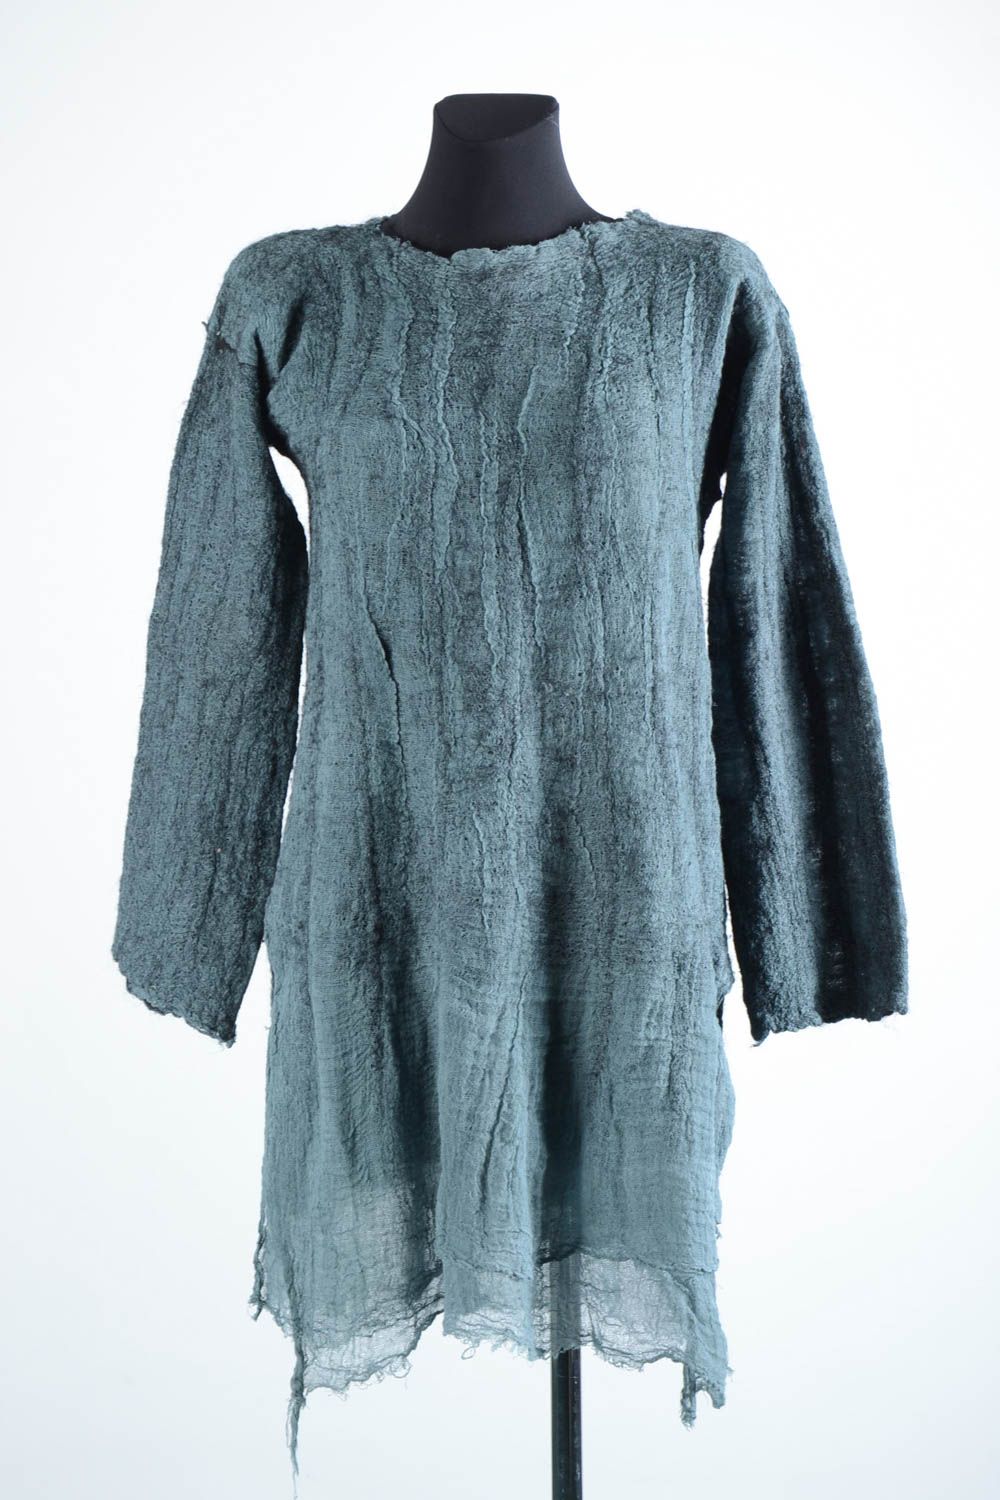 Langes Kleid handmade Damen Kleid Herbst Kleidung aus Naturfasern in Grau schön foto 1